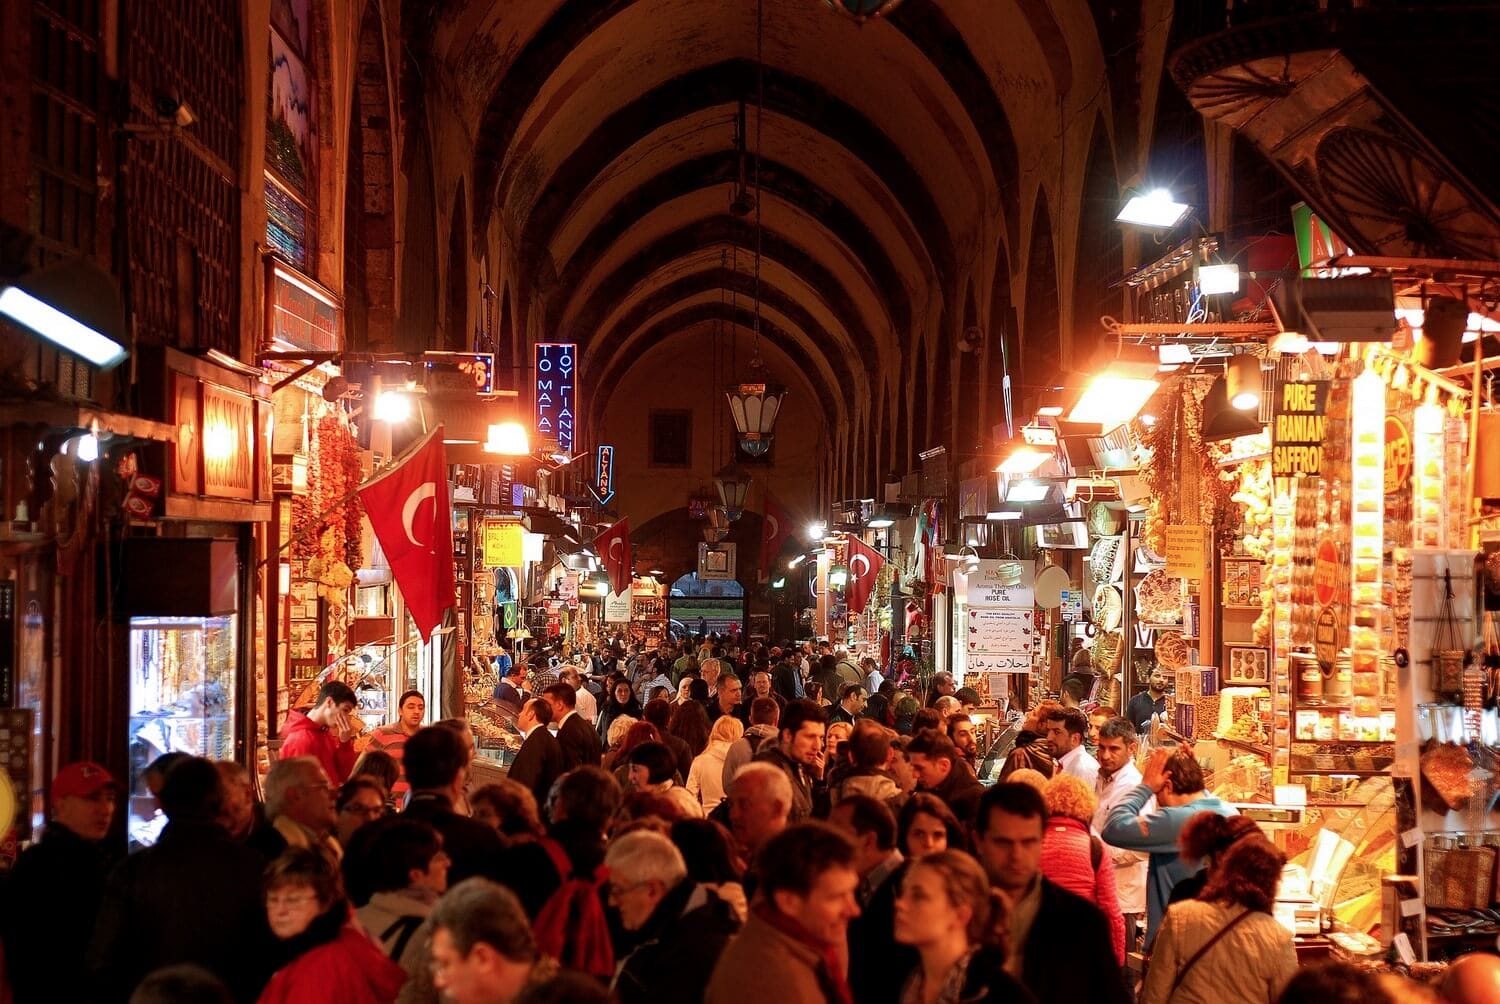 التسوق في اسطنبول - البازار الكبير أو جراند بازار